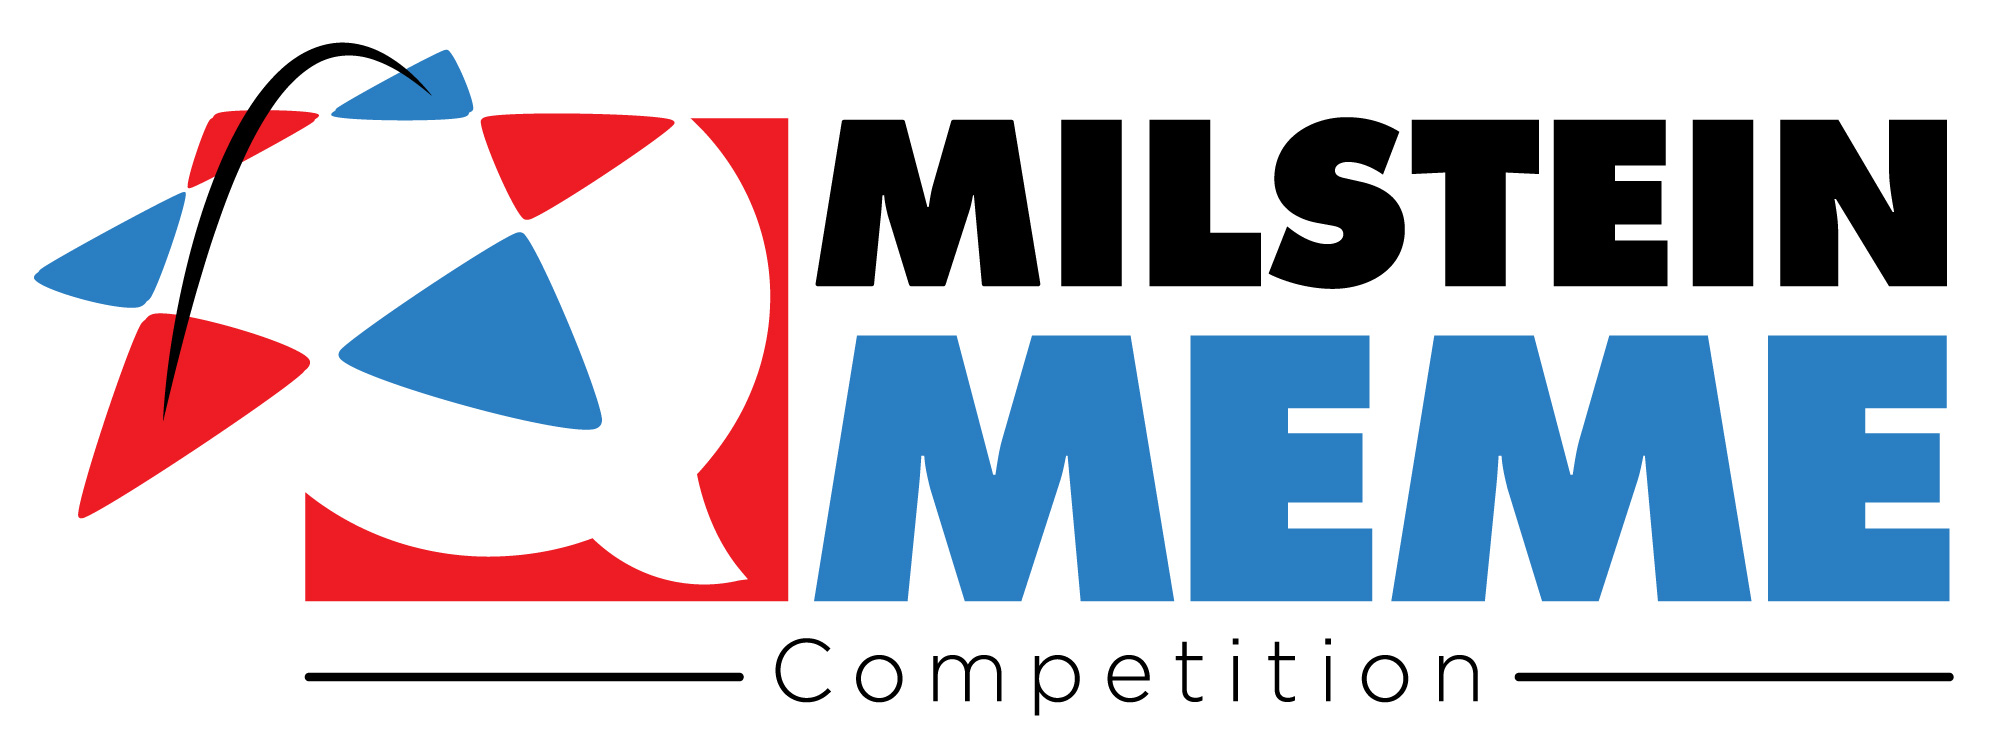 Milstein Meme Competition Launches Today ADAM MILSTEIN